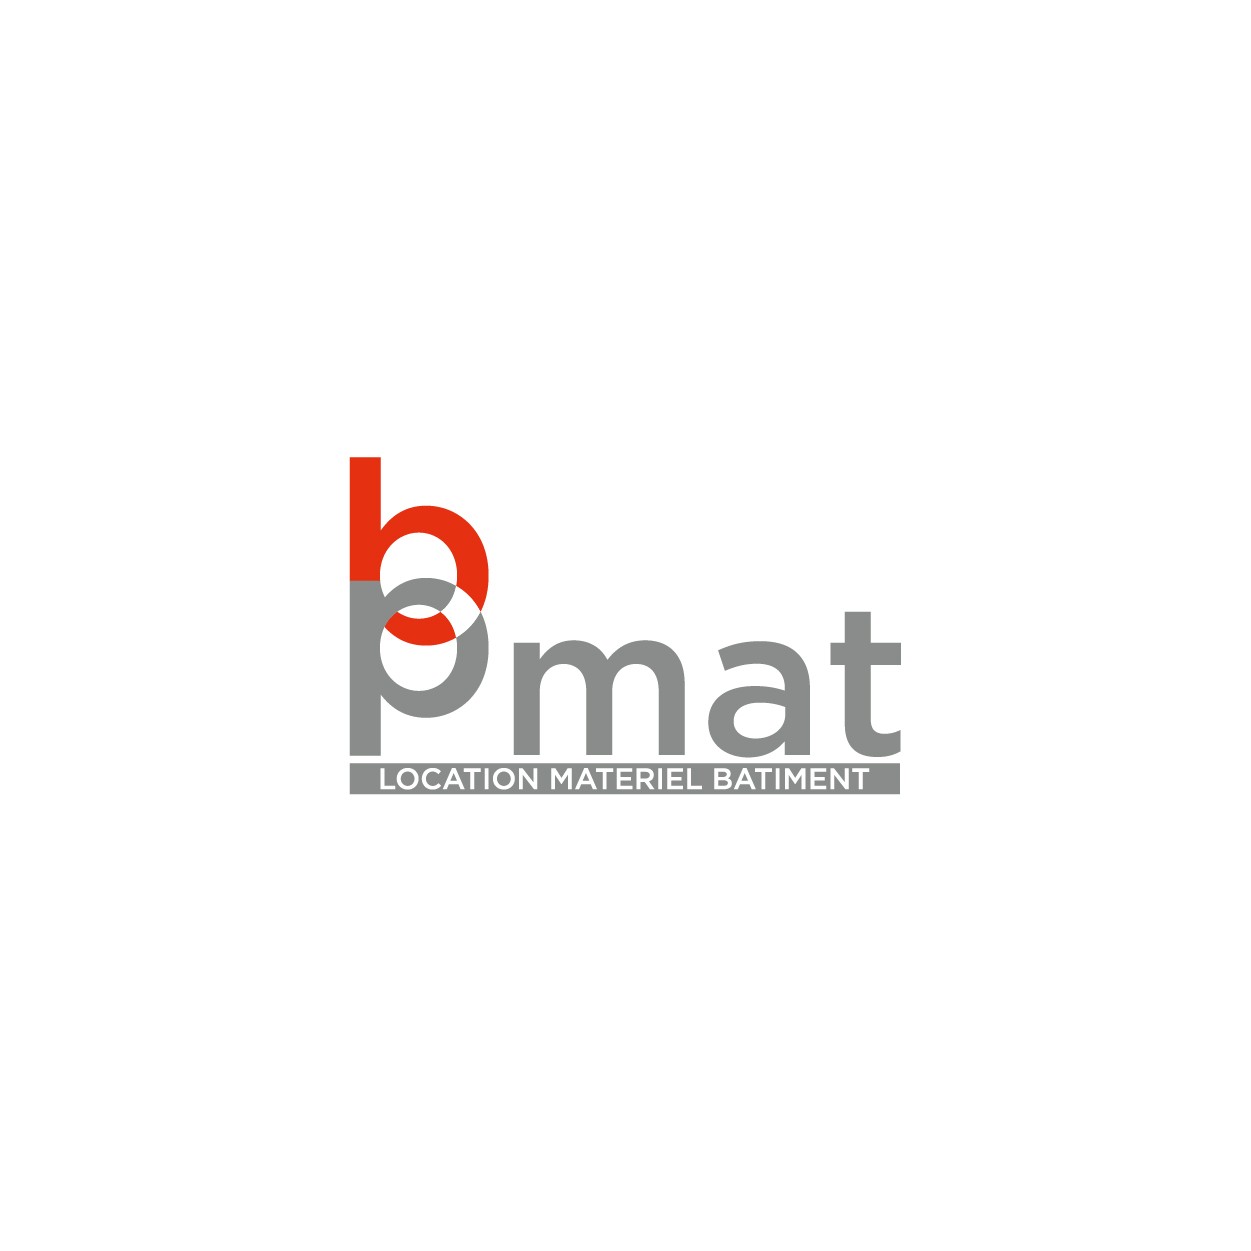 Creation logo et support de communication pour entreprise de location BP mat - Savoie